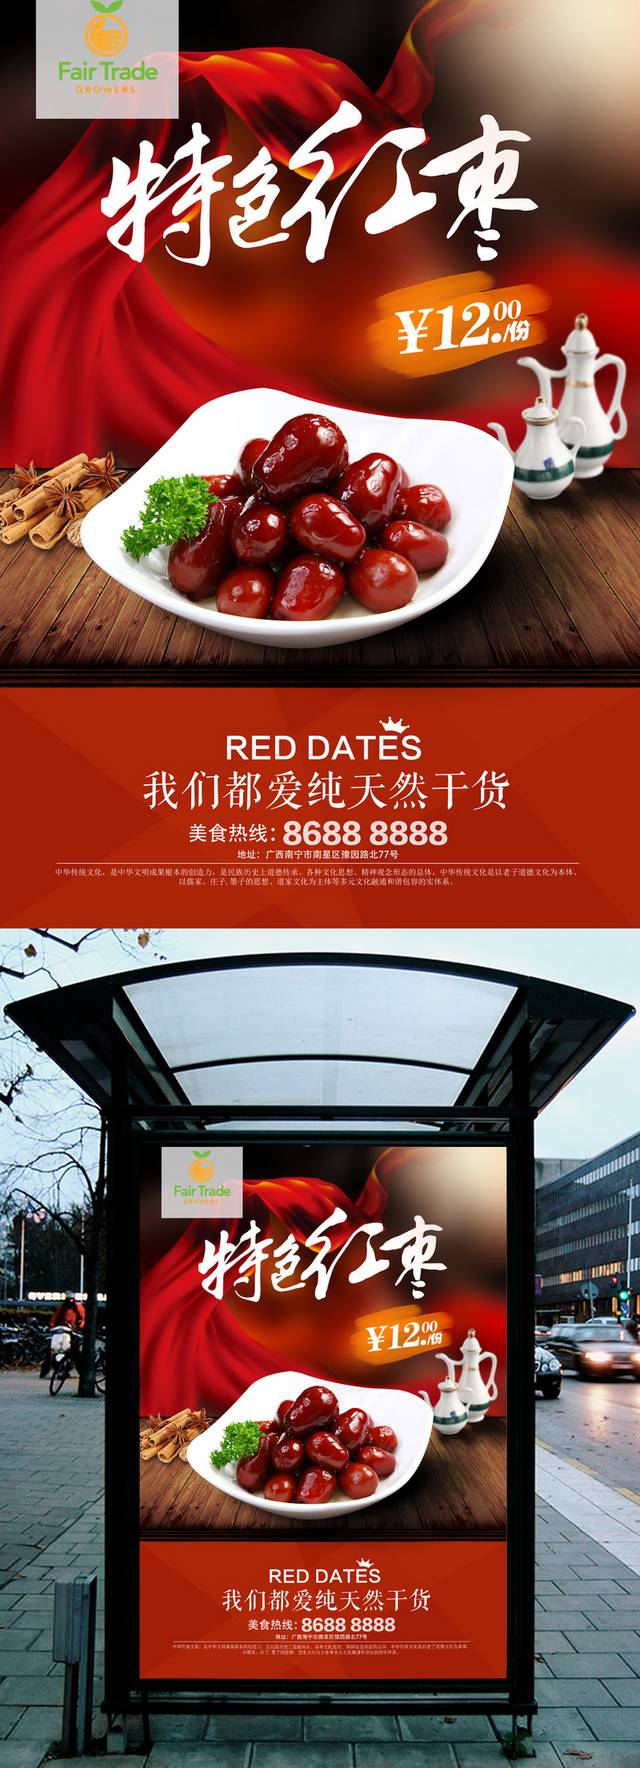 高清红枣海报模板设计下载